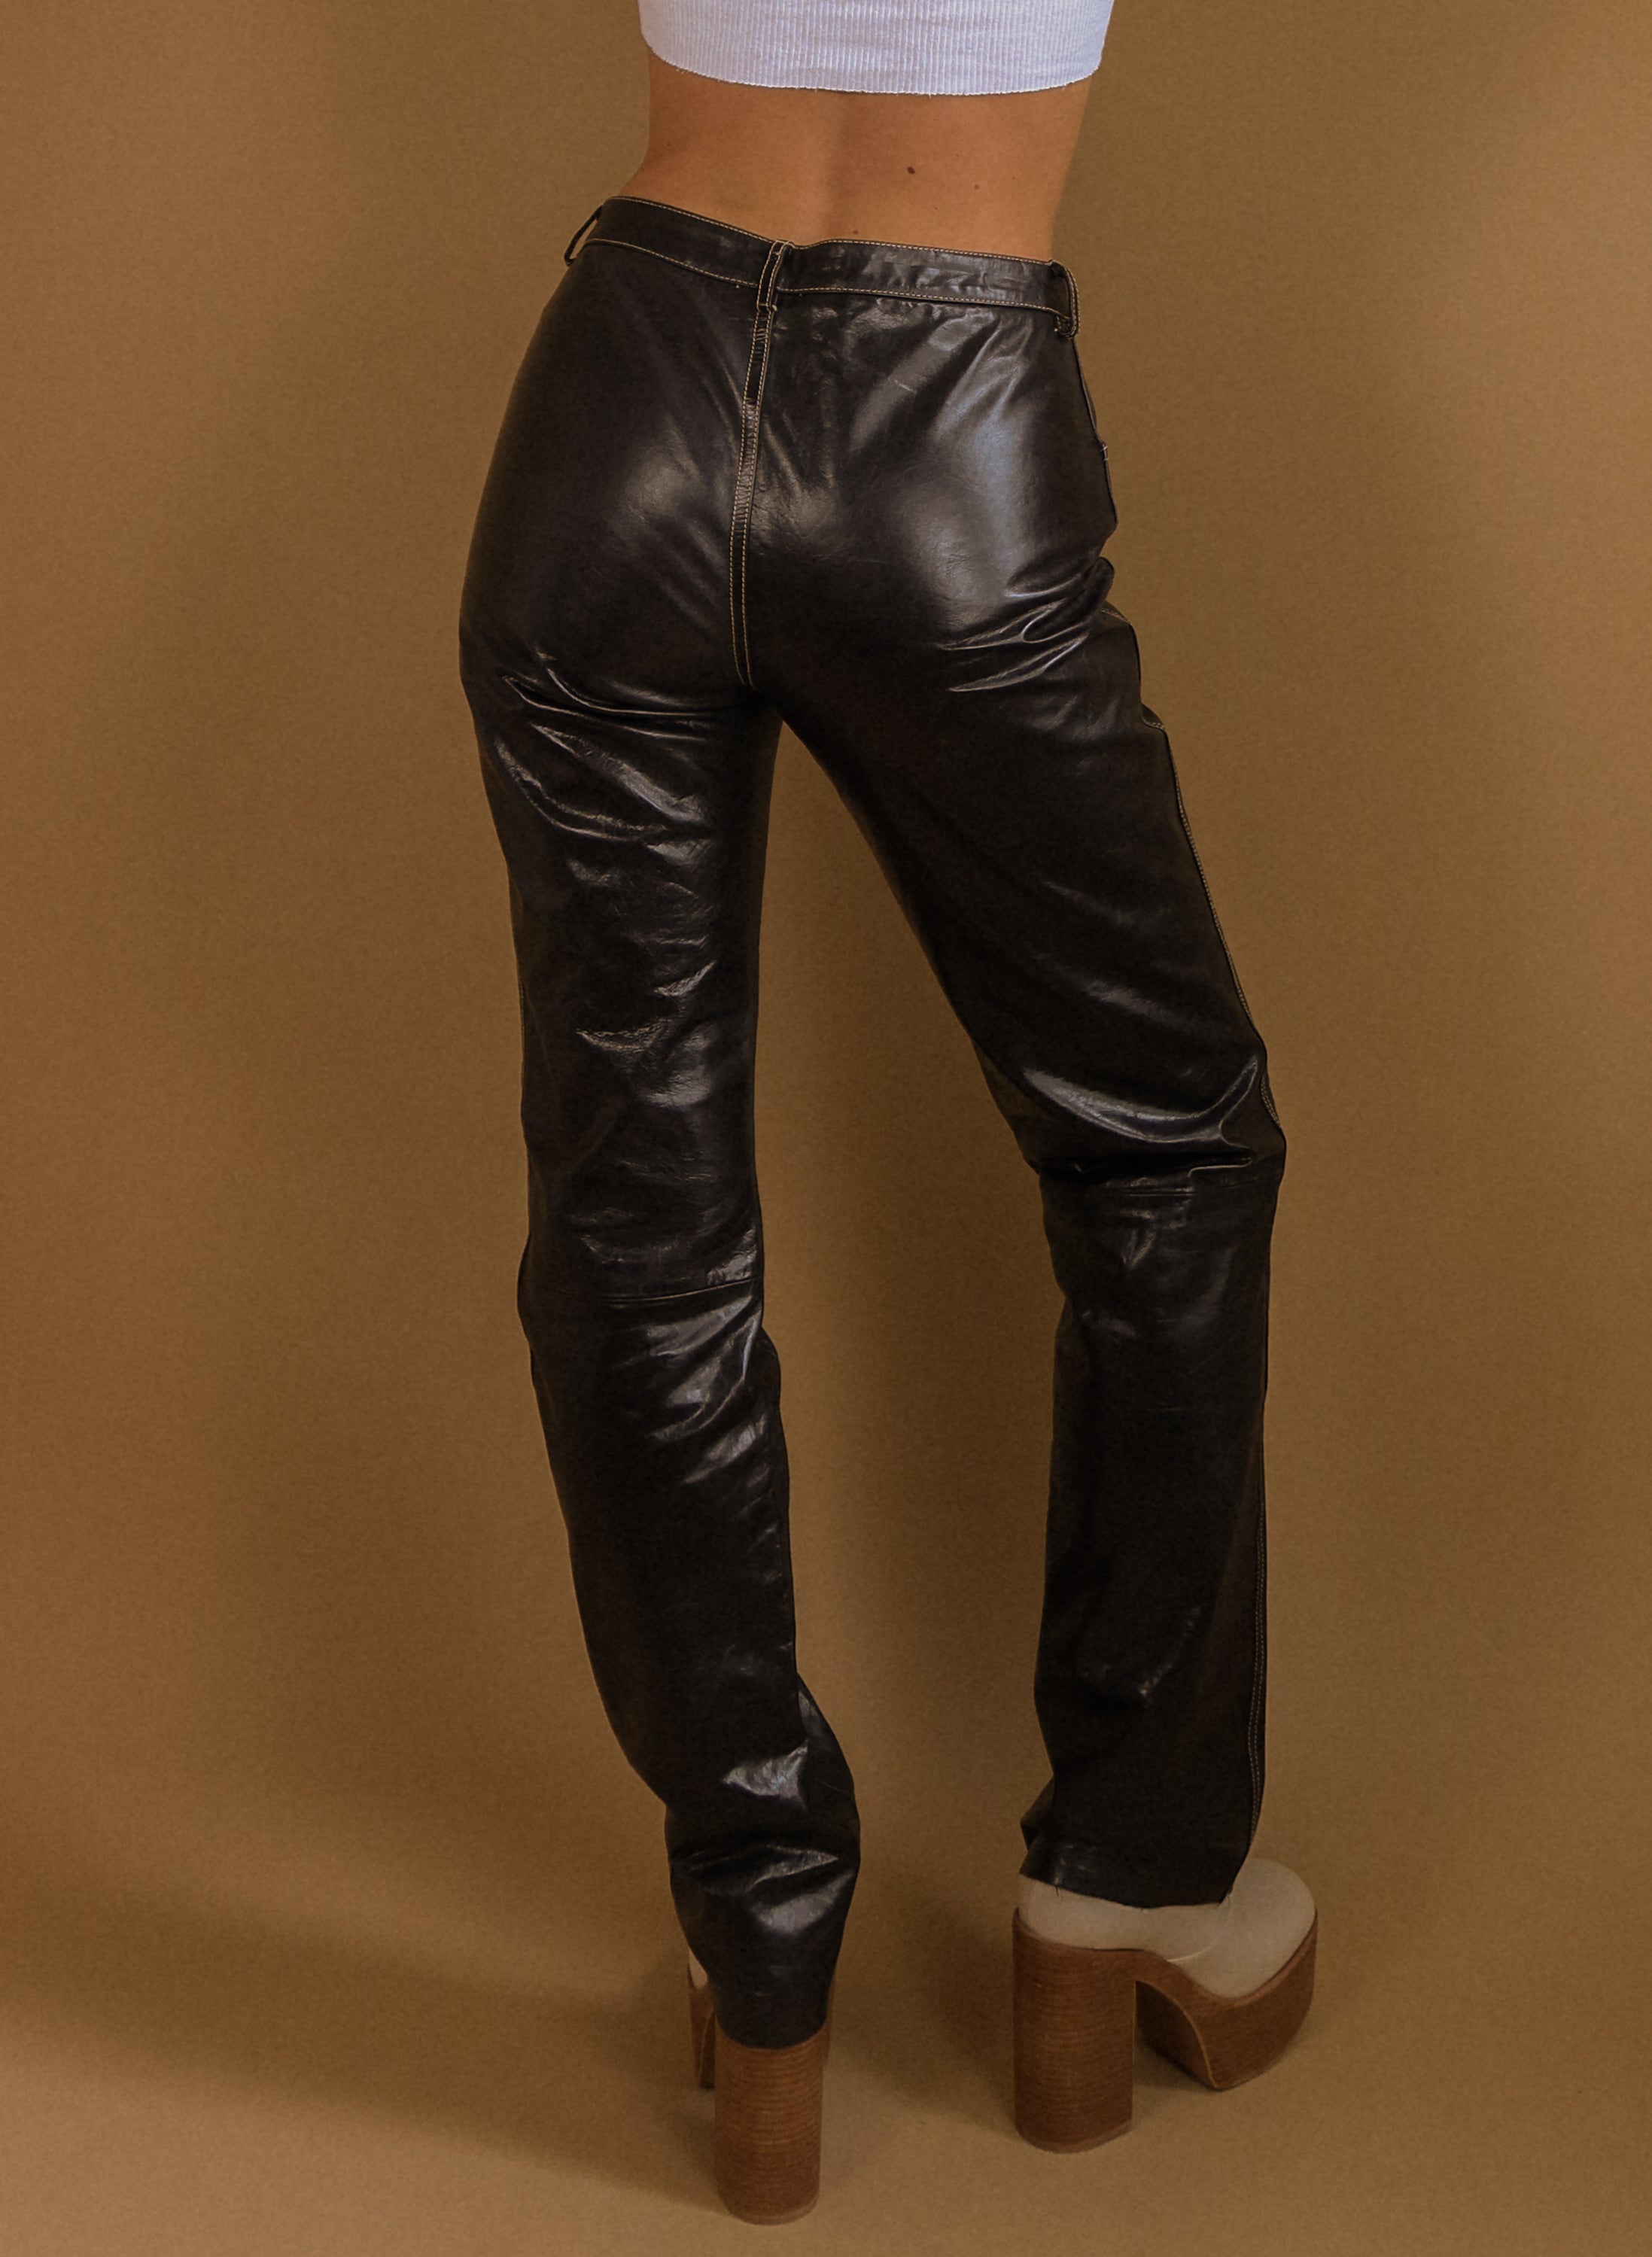 Coolest 90's Vintage Leather Pants